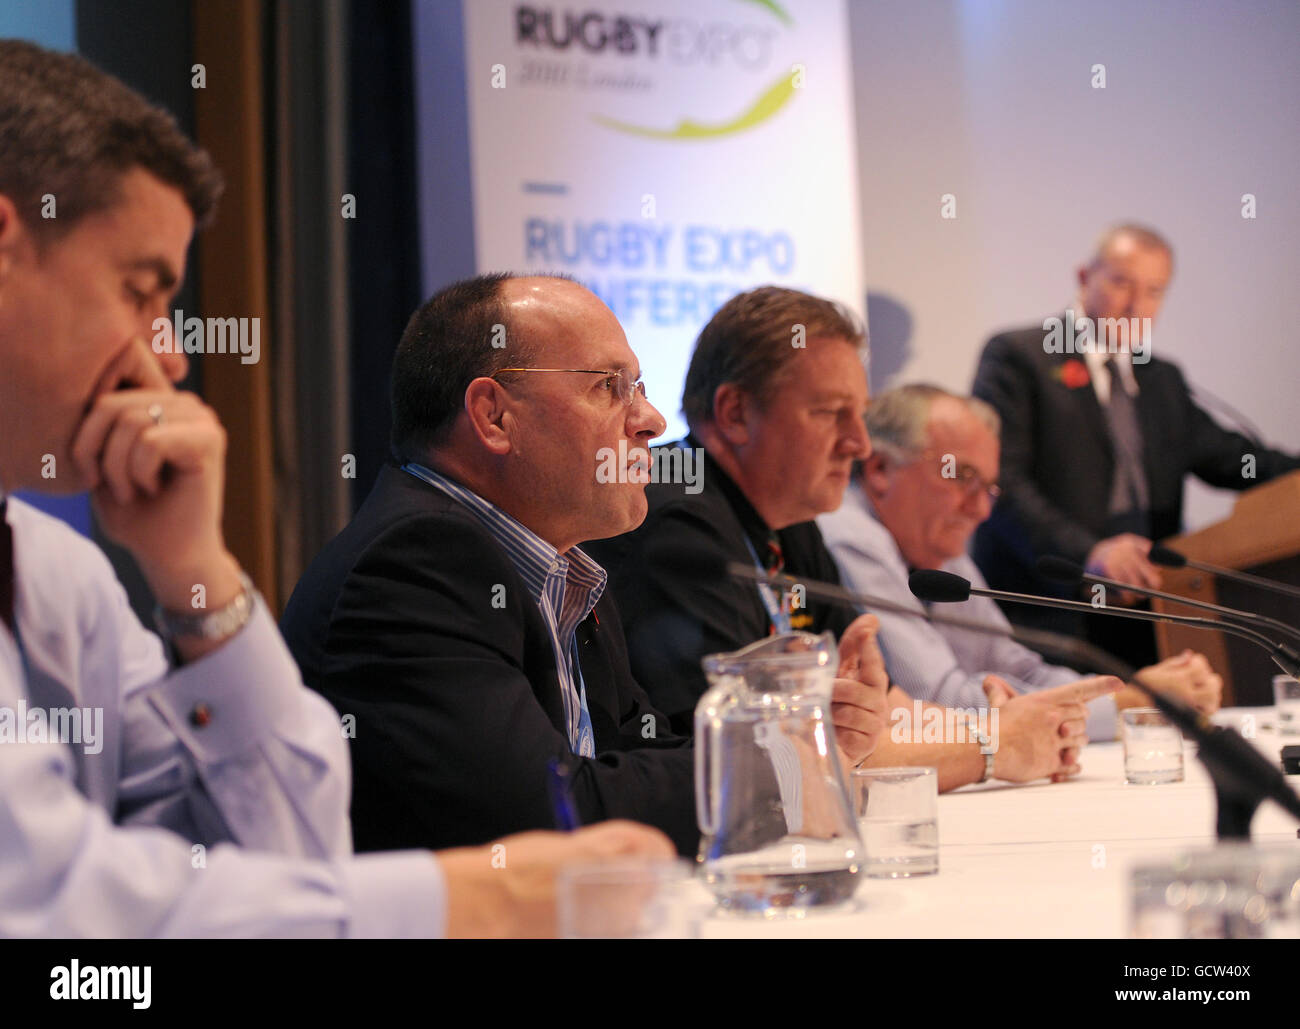 Panélistes (de gauche à droite) Dan Jones, Mark Evans, Keith Butten, Geoff Irvine et président Jim Rosenthal lors de la séance de développement et de mise en œuvre réussie de modèles de rugby le deuxième jour de l'exposition de rugby au RHS Lawrence Hall, Westminster Banque D'Images